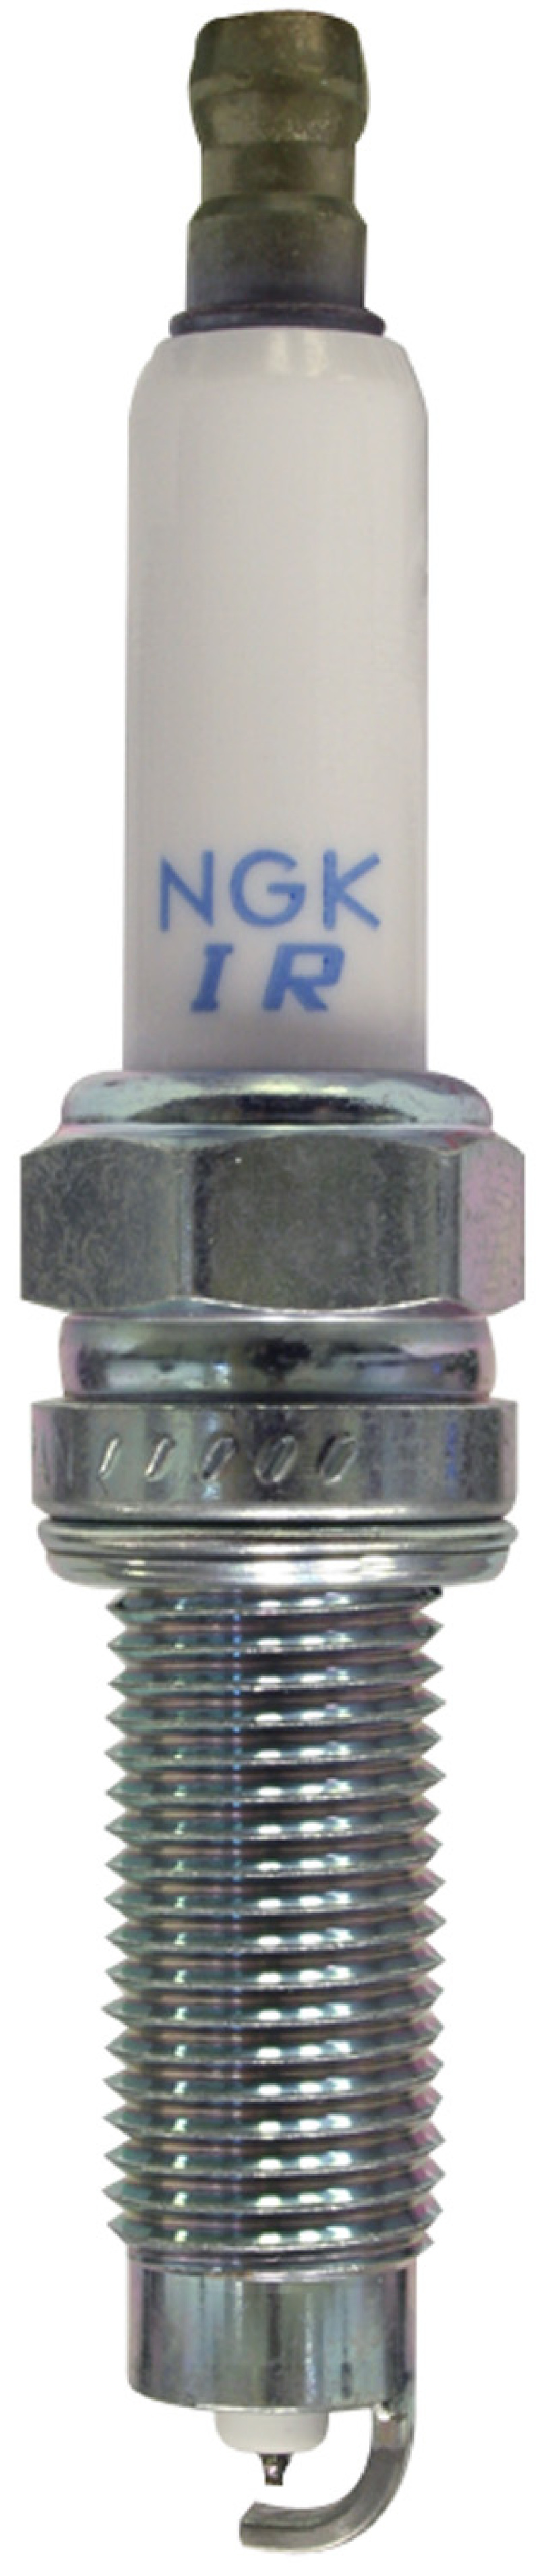 NGK Laser Iridium Spark Plug Box of 4 (ILZKR8A) - 94290